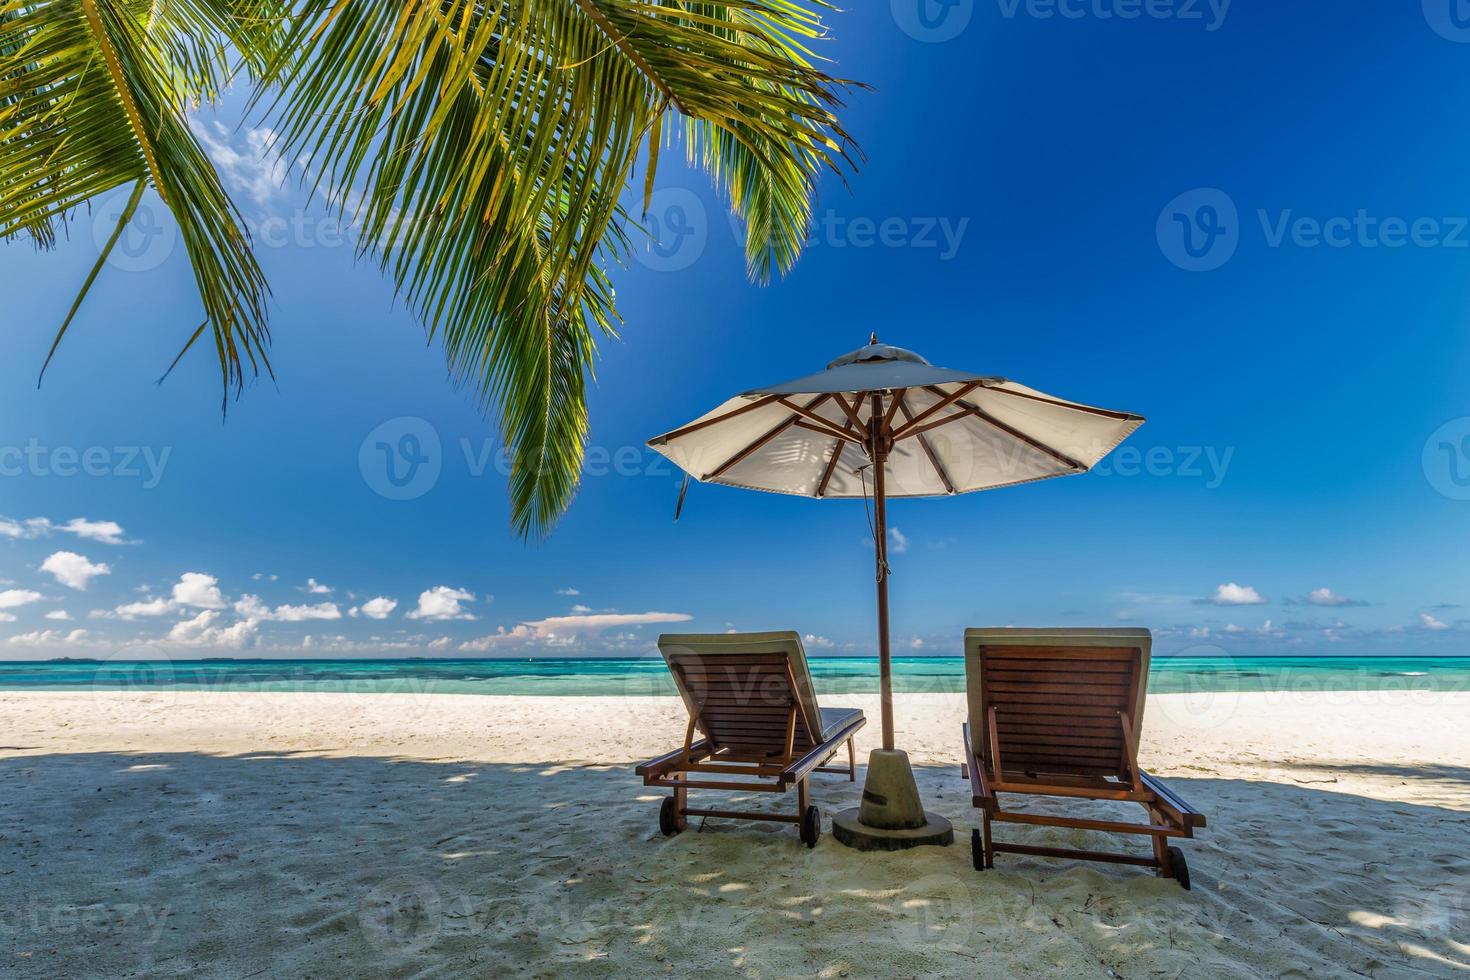 schöne tropische sonnige küste, paar sonnenliegen stühle regenschirm unter palmenblättern. Meer Sand Horizont Himmel. romantischer Relax-Lifestyle inspiriert den Hintergrund des Inselstrandes. sommerreise exotischer urlaub foto